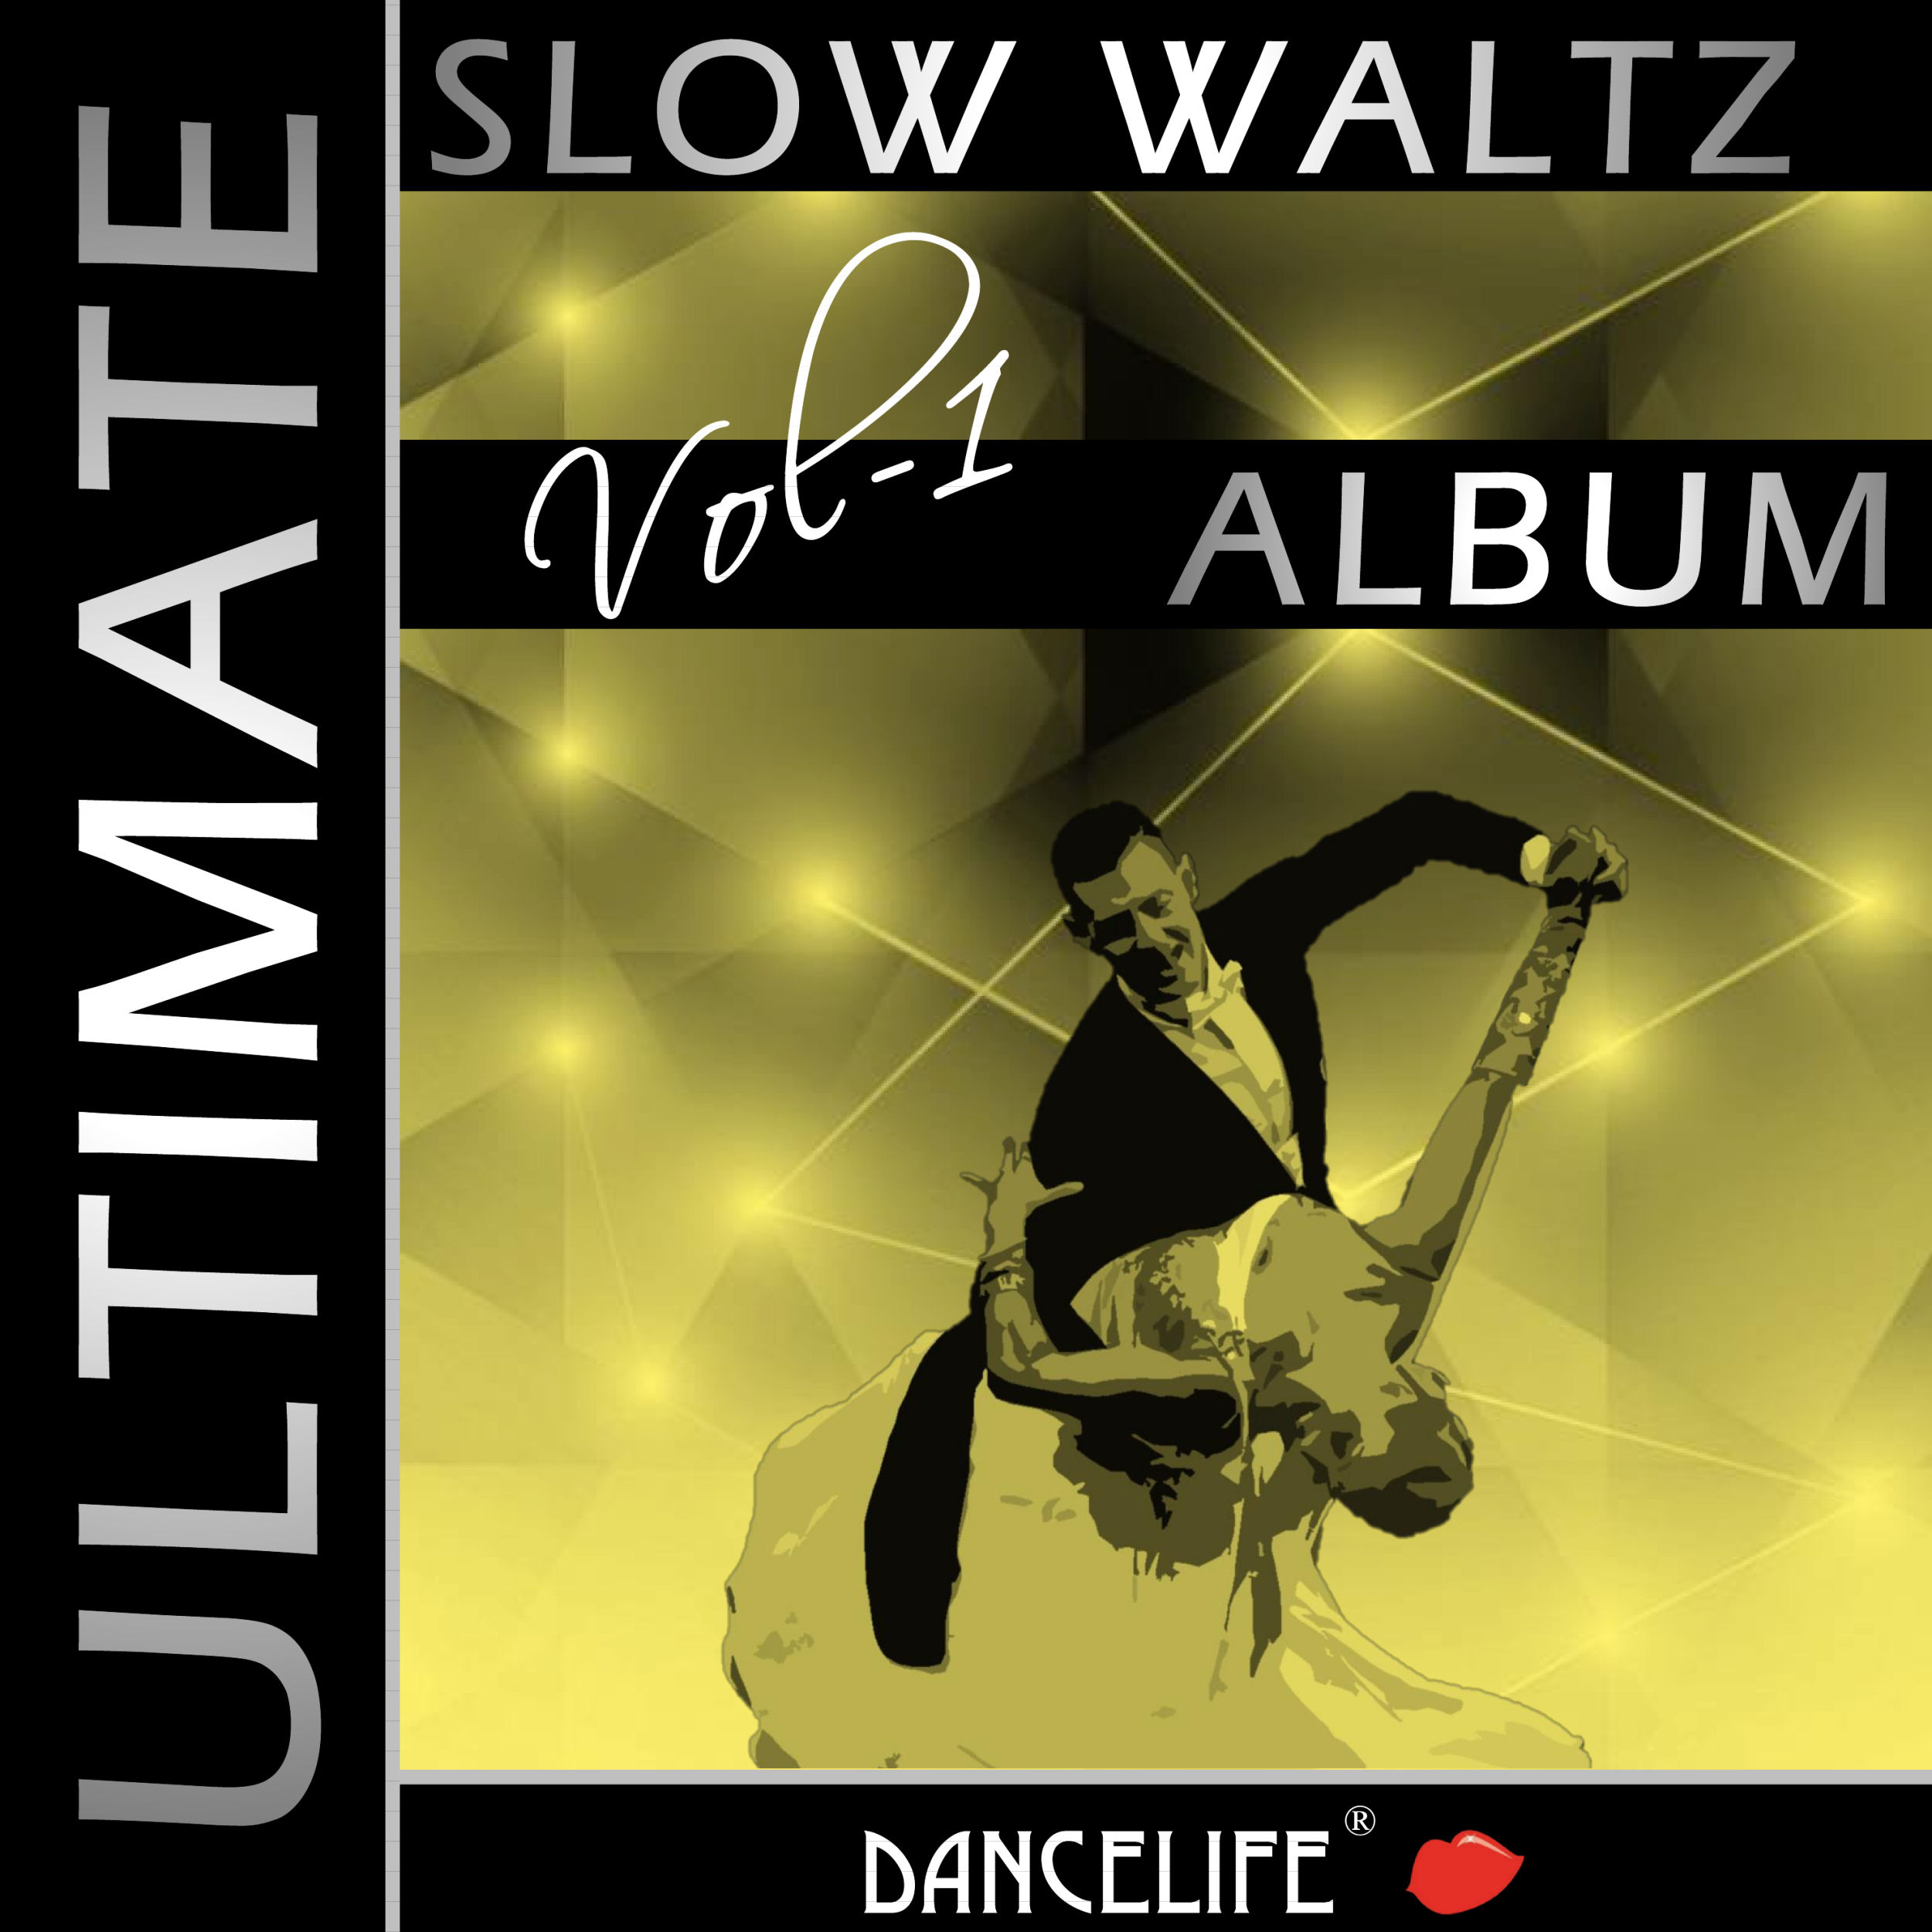 Dancelife presents: The Ultimate Slow Waltz Album, Vol. 1